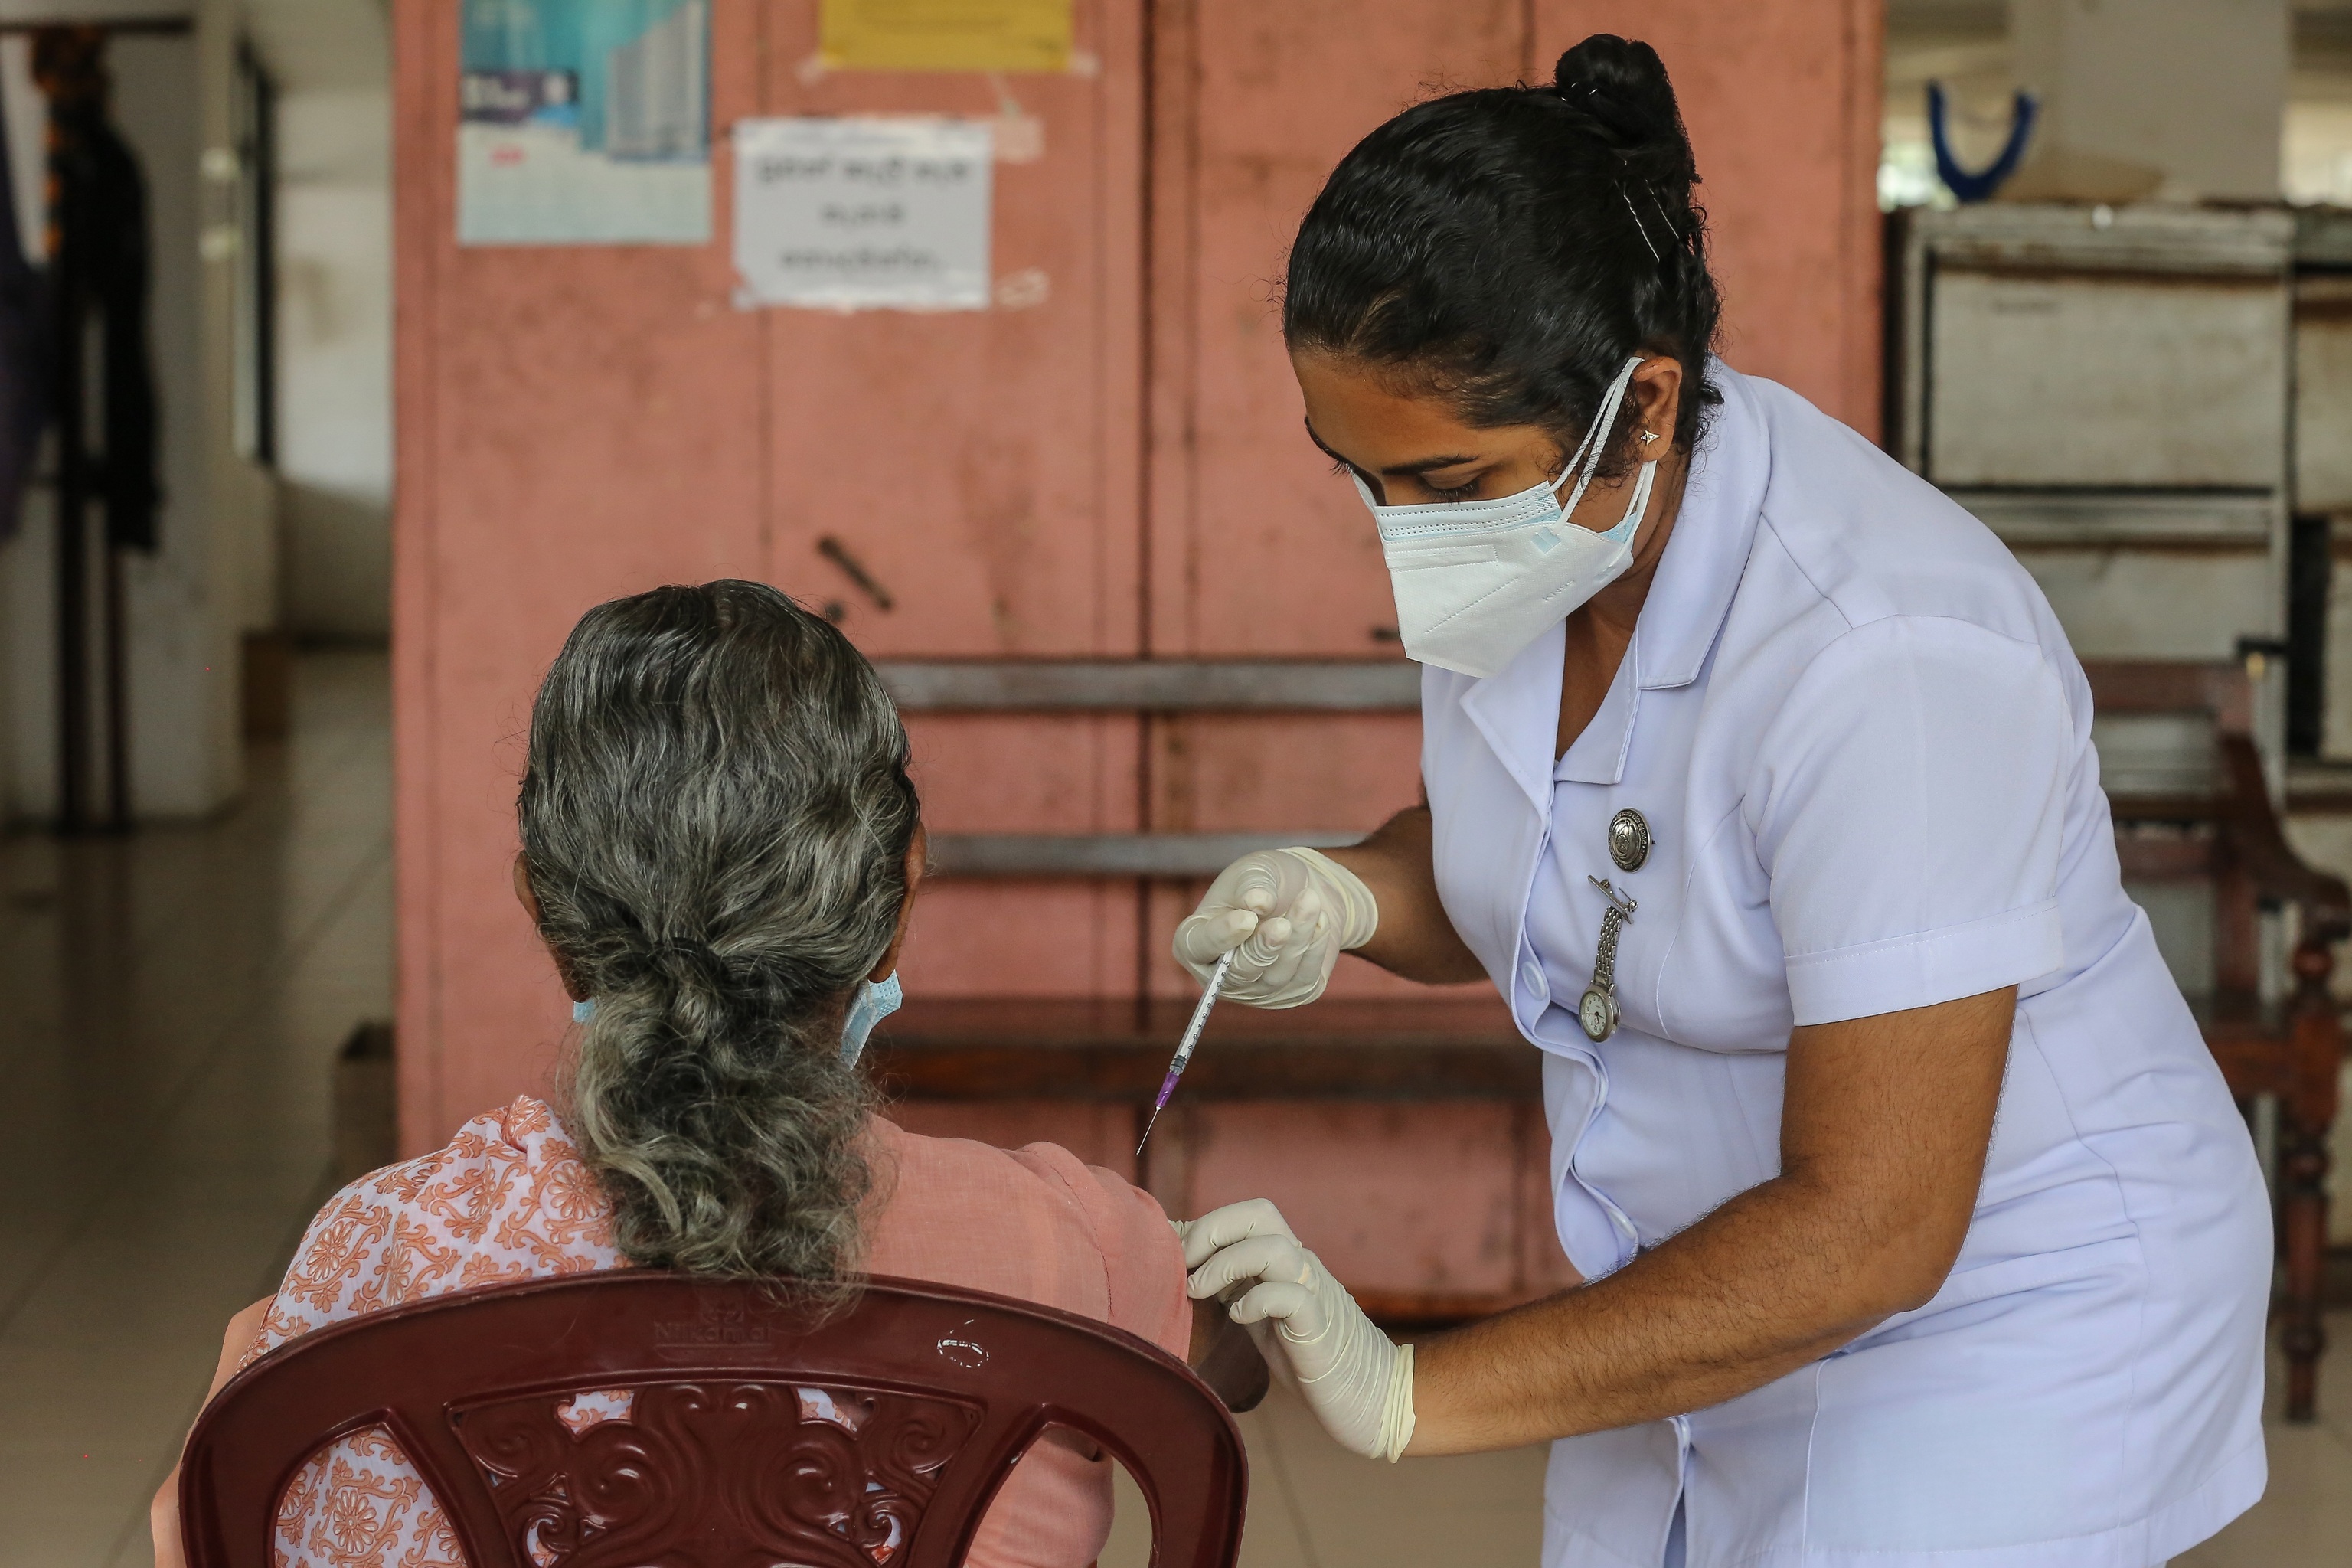 Una persona mayor recibe la dosis de refuerzo de la vacuna Covid-19 en una clnica de vacunacin temporal en Colombo, Sri Lanka, el 17 de noviembre de 2021. Las autoridades sanitarias de Sri Lanka comenzaron a administrar la dosis de refuerzo a los ciudadanos de edad avanzada el 17 de noviembre de 2021. El pas est administrando actualmente las vacunas de Pfizer-BioNTech, Oxford AstraZeneca, la china Sinopharm, la rusa Sputnik V y Moderna. (Rusia)